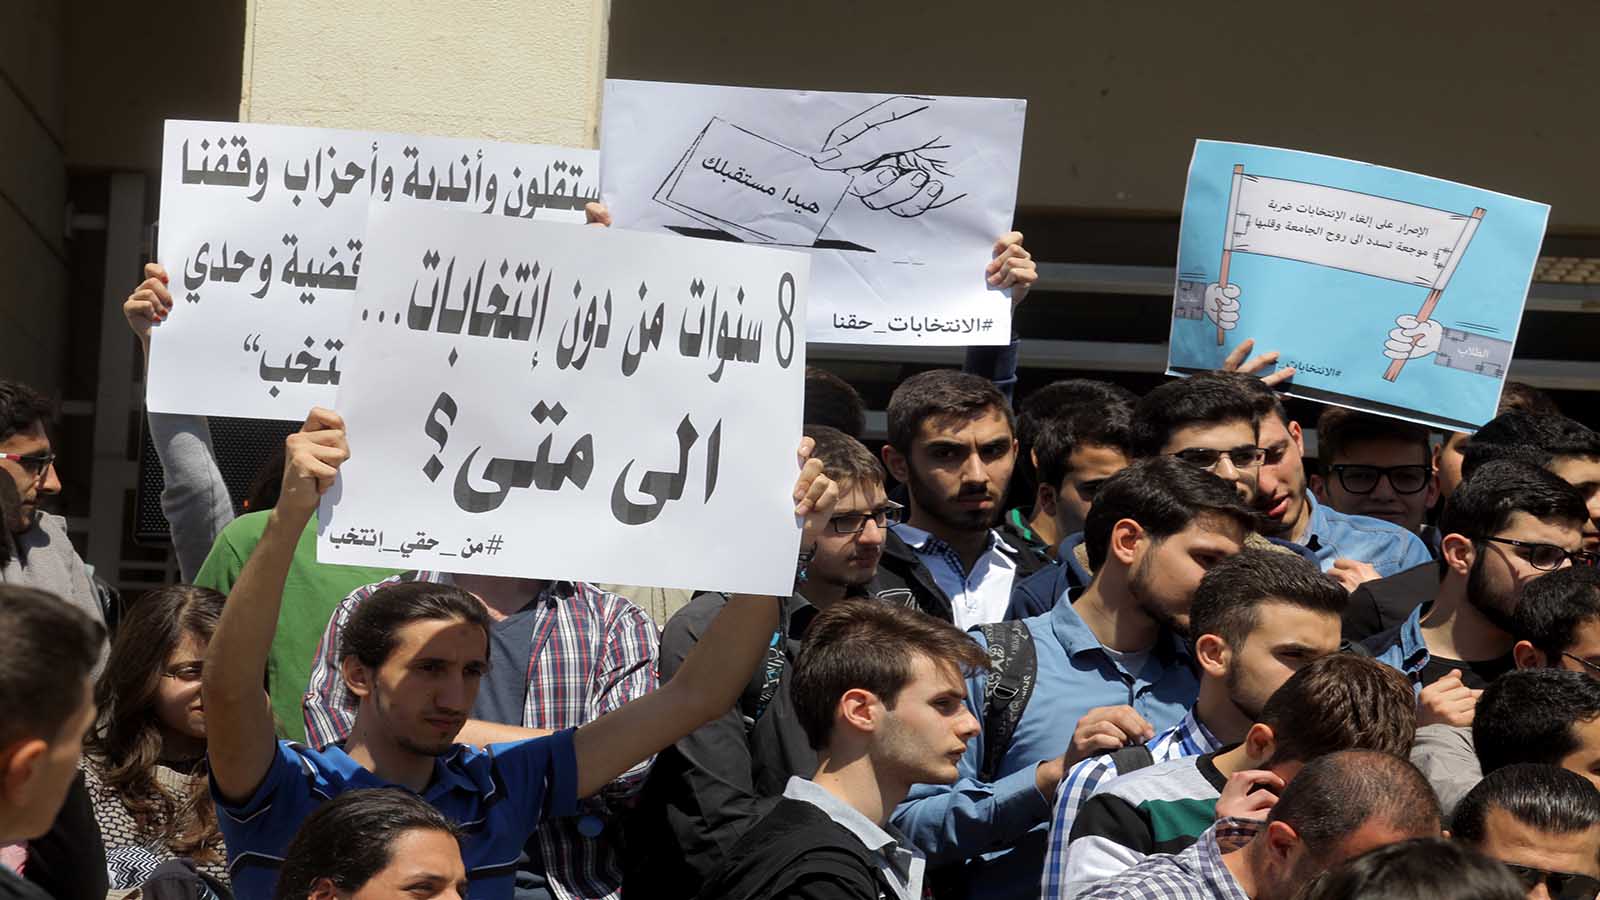 طلاب "اللبنانية": تأجيل الانتخابات جريمة